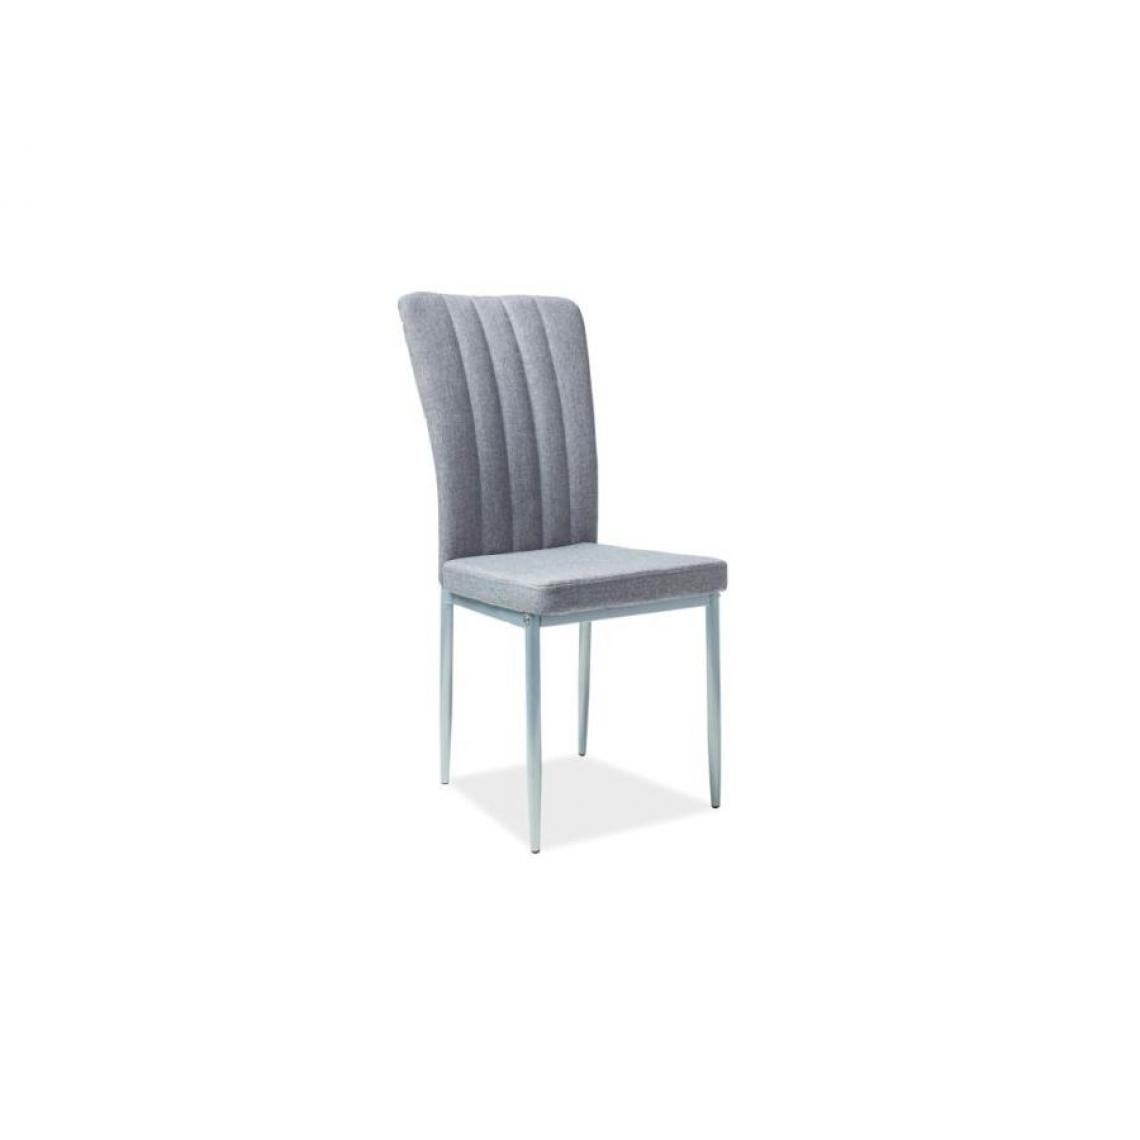 Hucoco - HORI | Chaise élégante style moderne ambiance | Dimensions : 96x40x40 cm | Rembourrage tissu | Chaise salle à manger bureau salon - Gris - Chaises